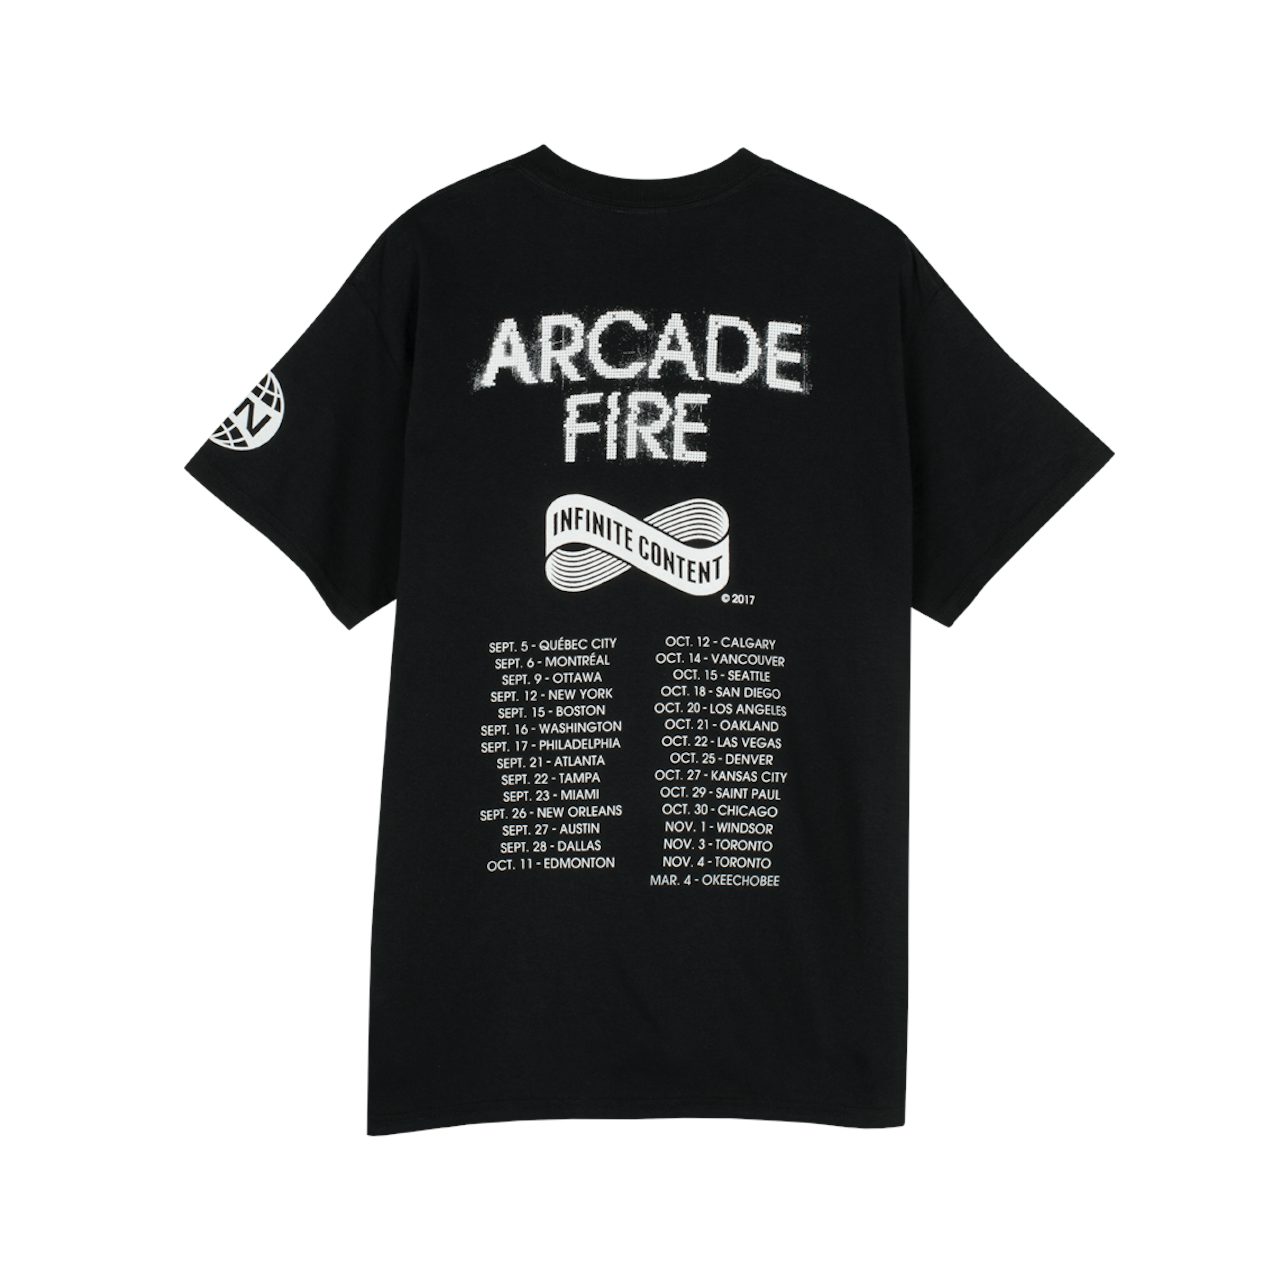 Arcade fire t shirt